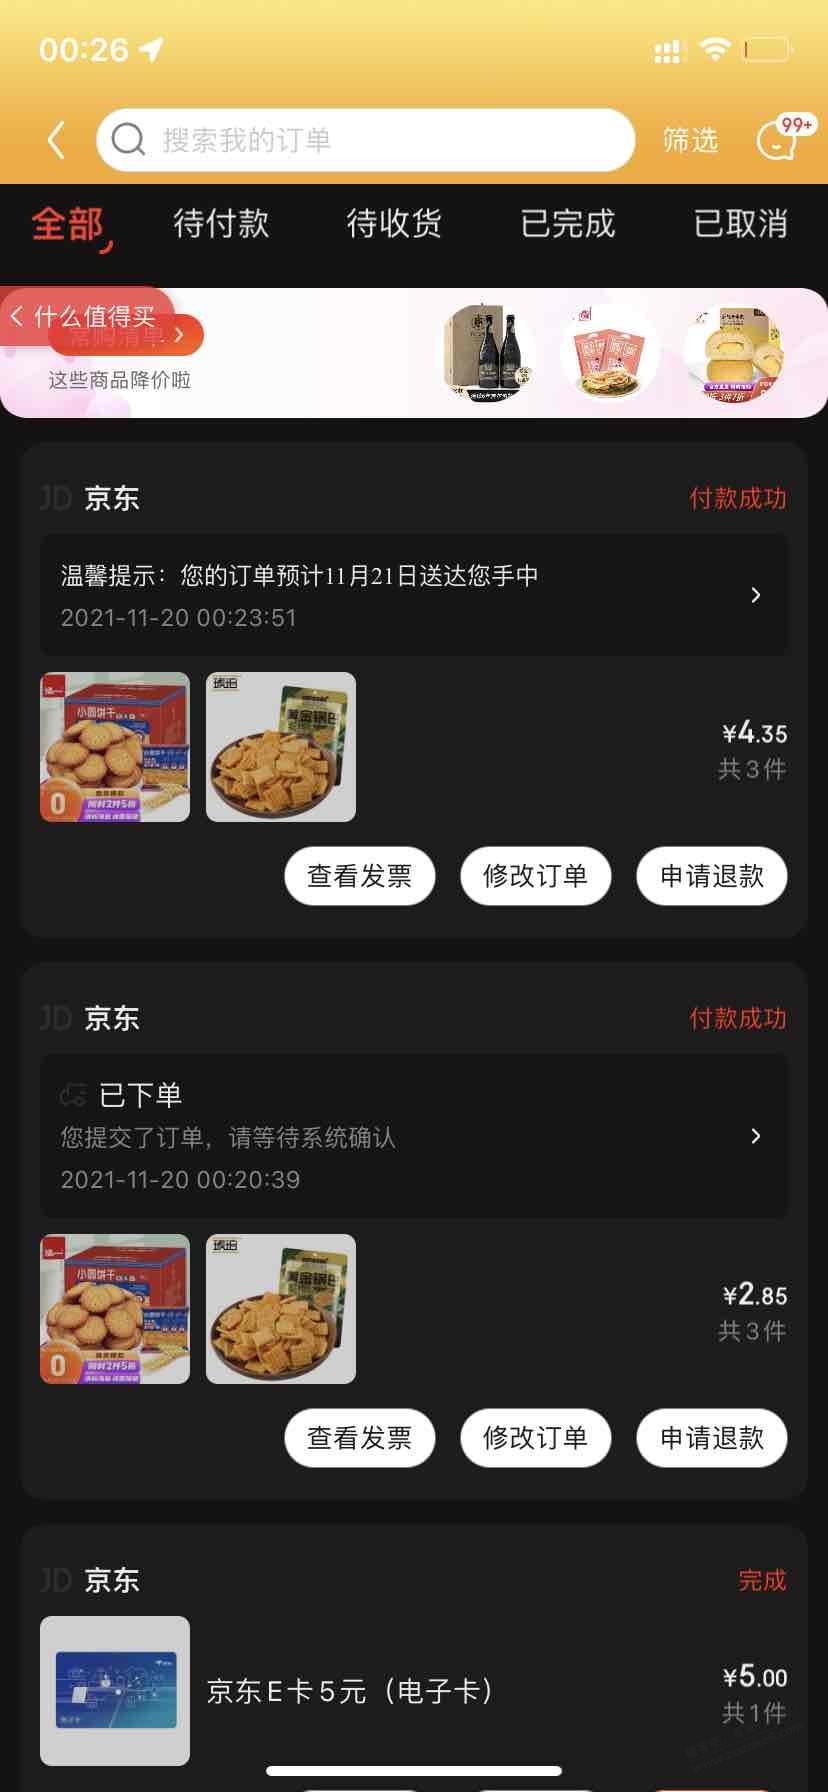 49-20神价作业4.85买两斤日式小圆饼锅巴-惠小助(52huixz.com)